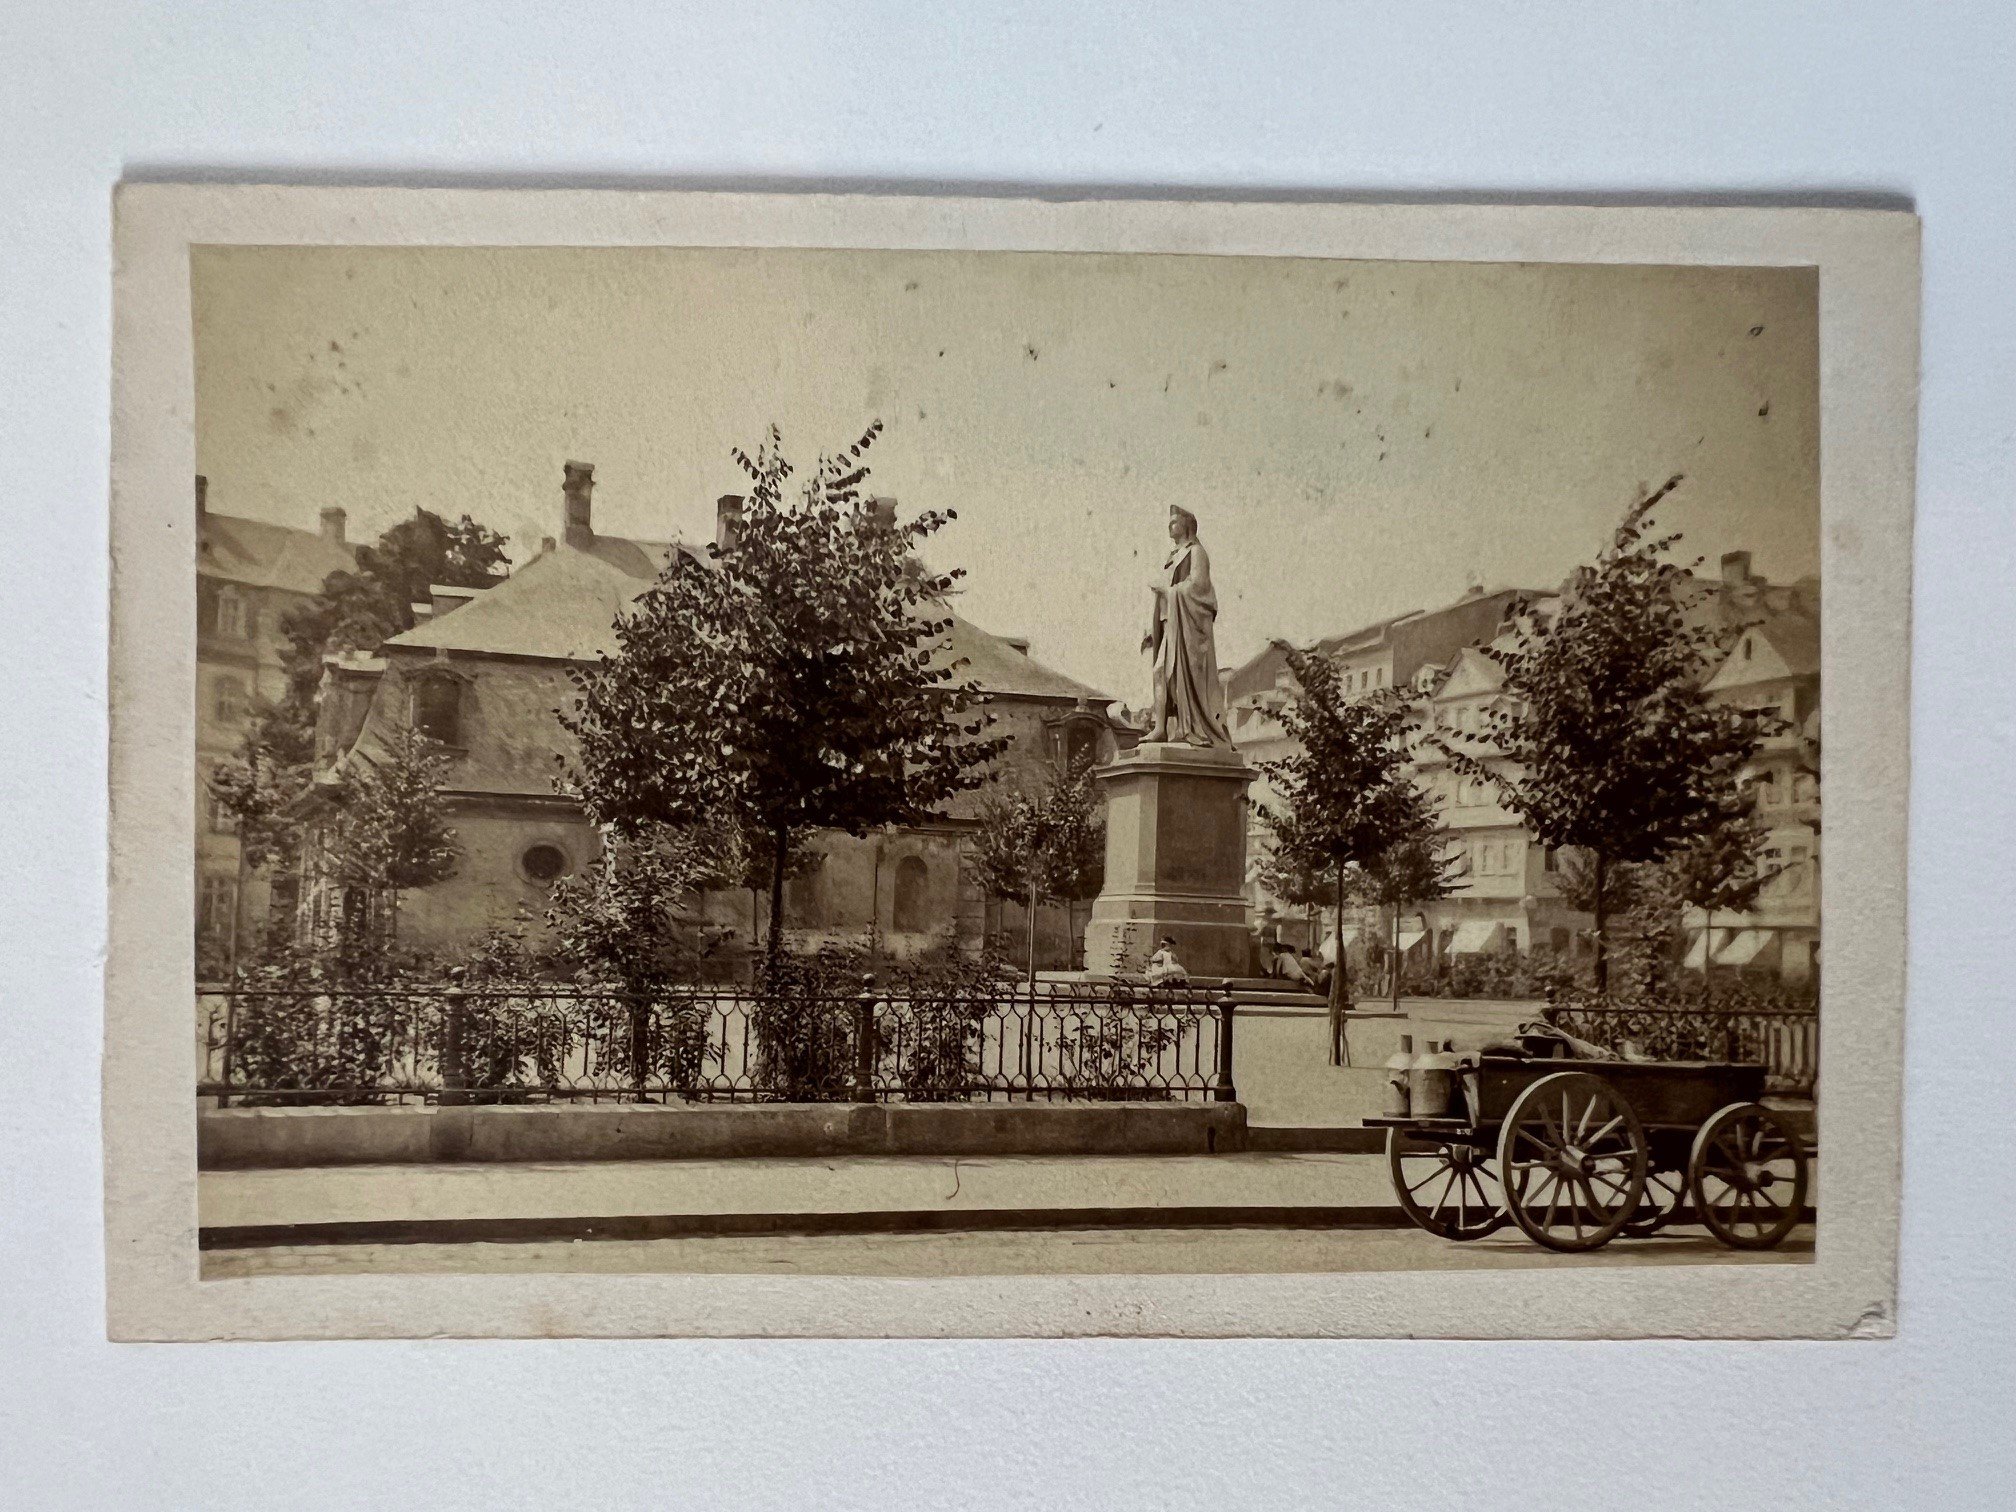 CdV, Unbekannter Fotograf, Frankfurt, Schiller-Denkmal an der Hauptwache, ca. 1865. (Taunus-Rhein-Main - Regionalgeschichtliche Sammlung Dr. Stefan Naas CC BY-NC-SA)